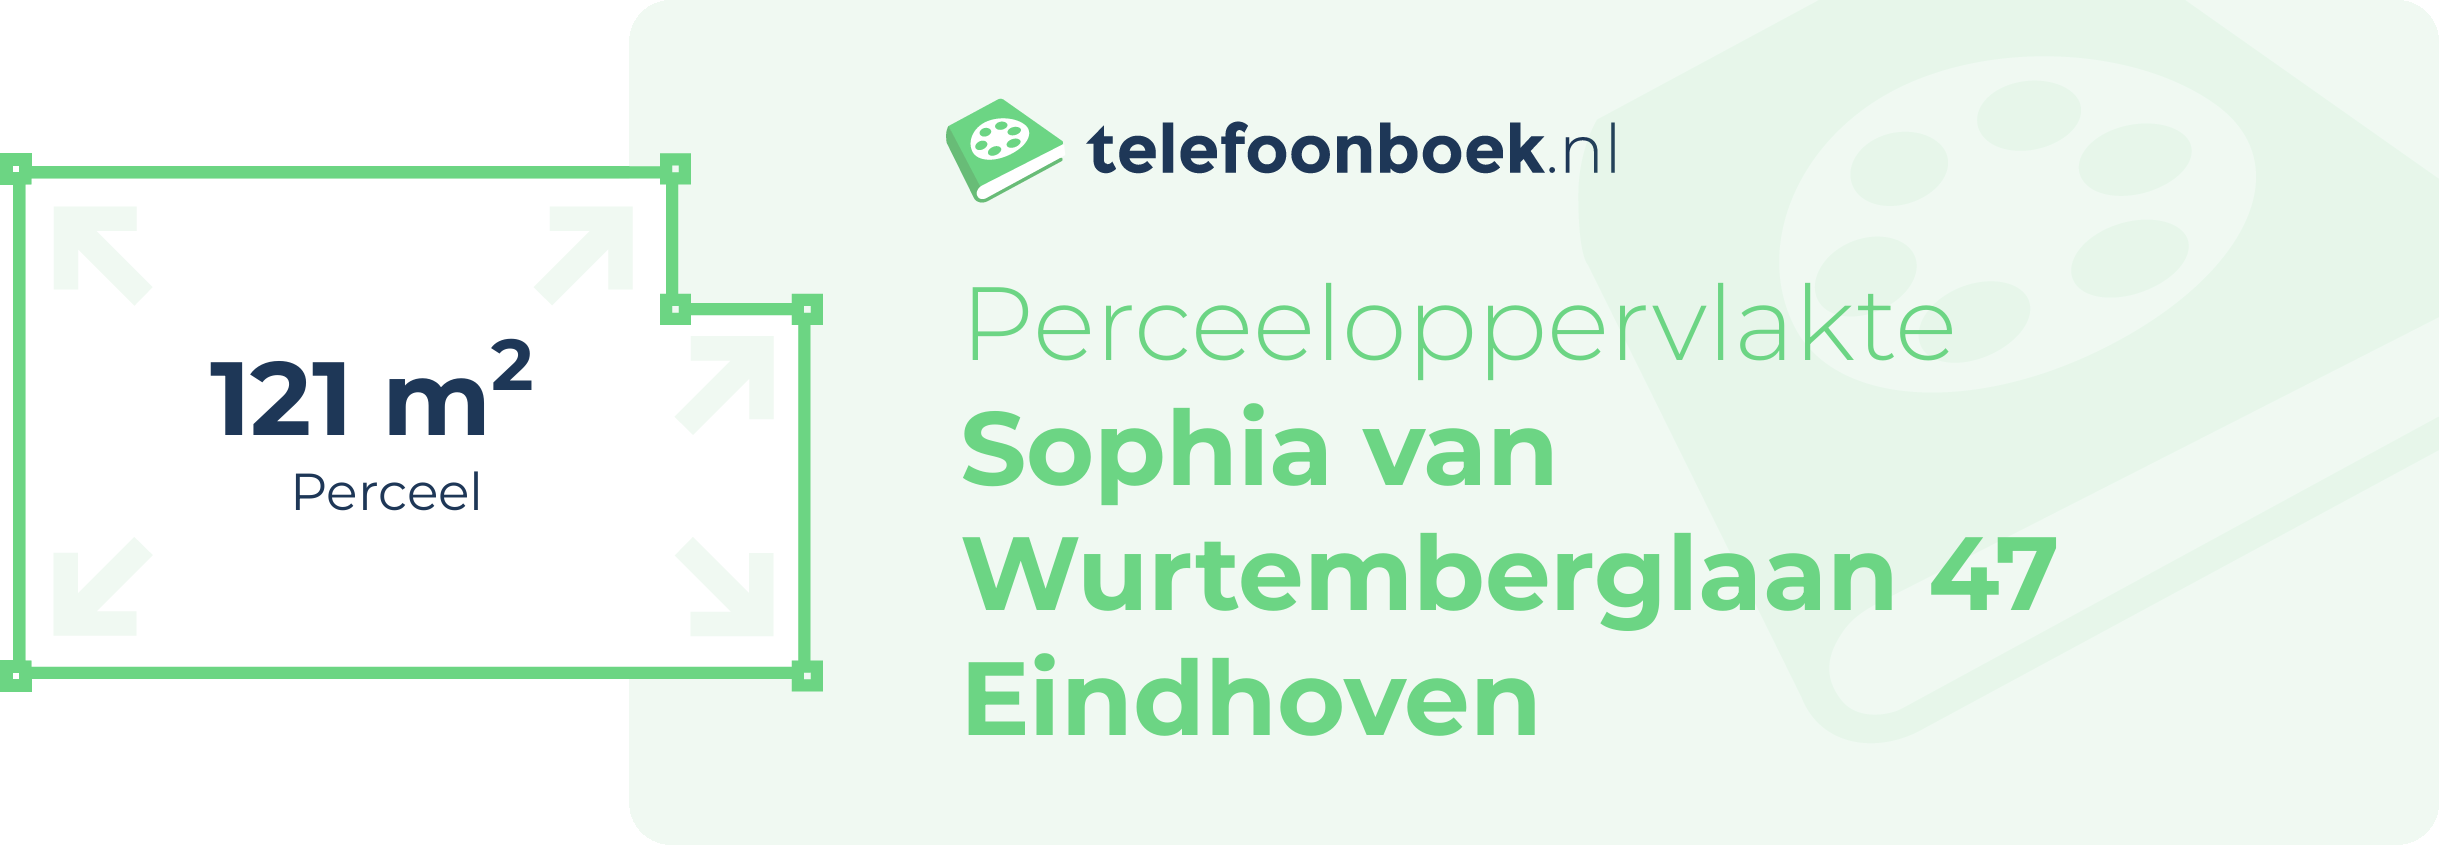 Perceeloppervlakte Sophia Van Wurtemberglaan 47 Eindhoven